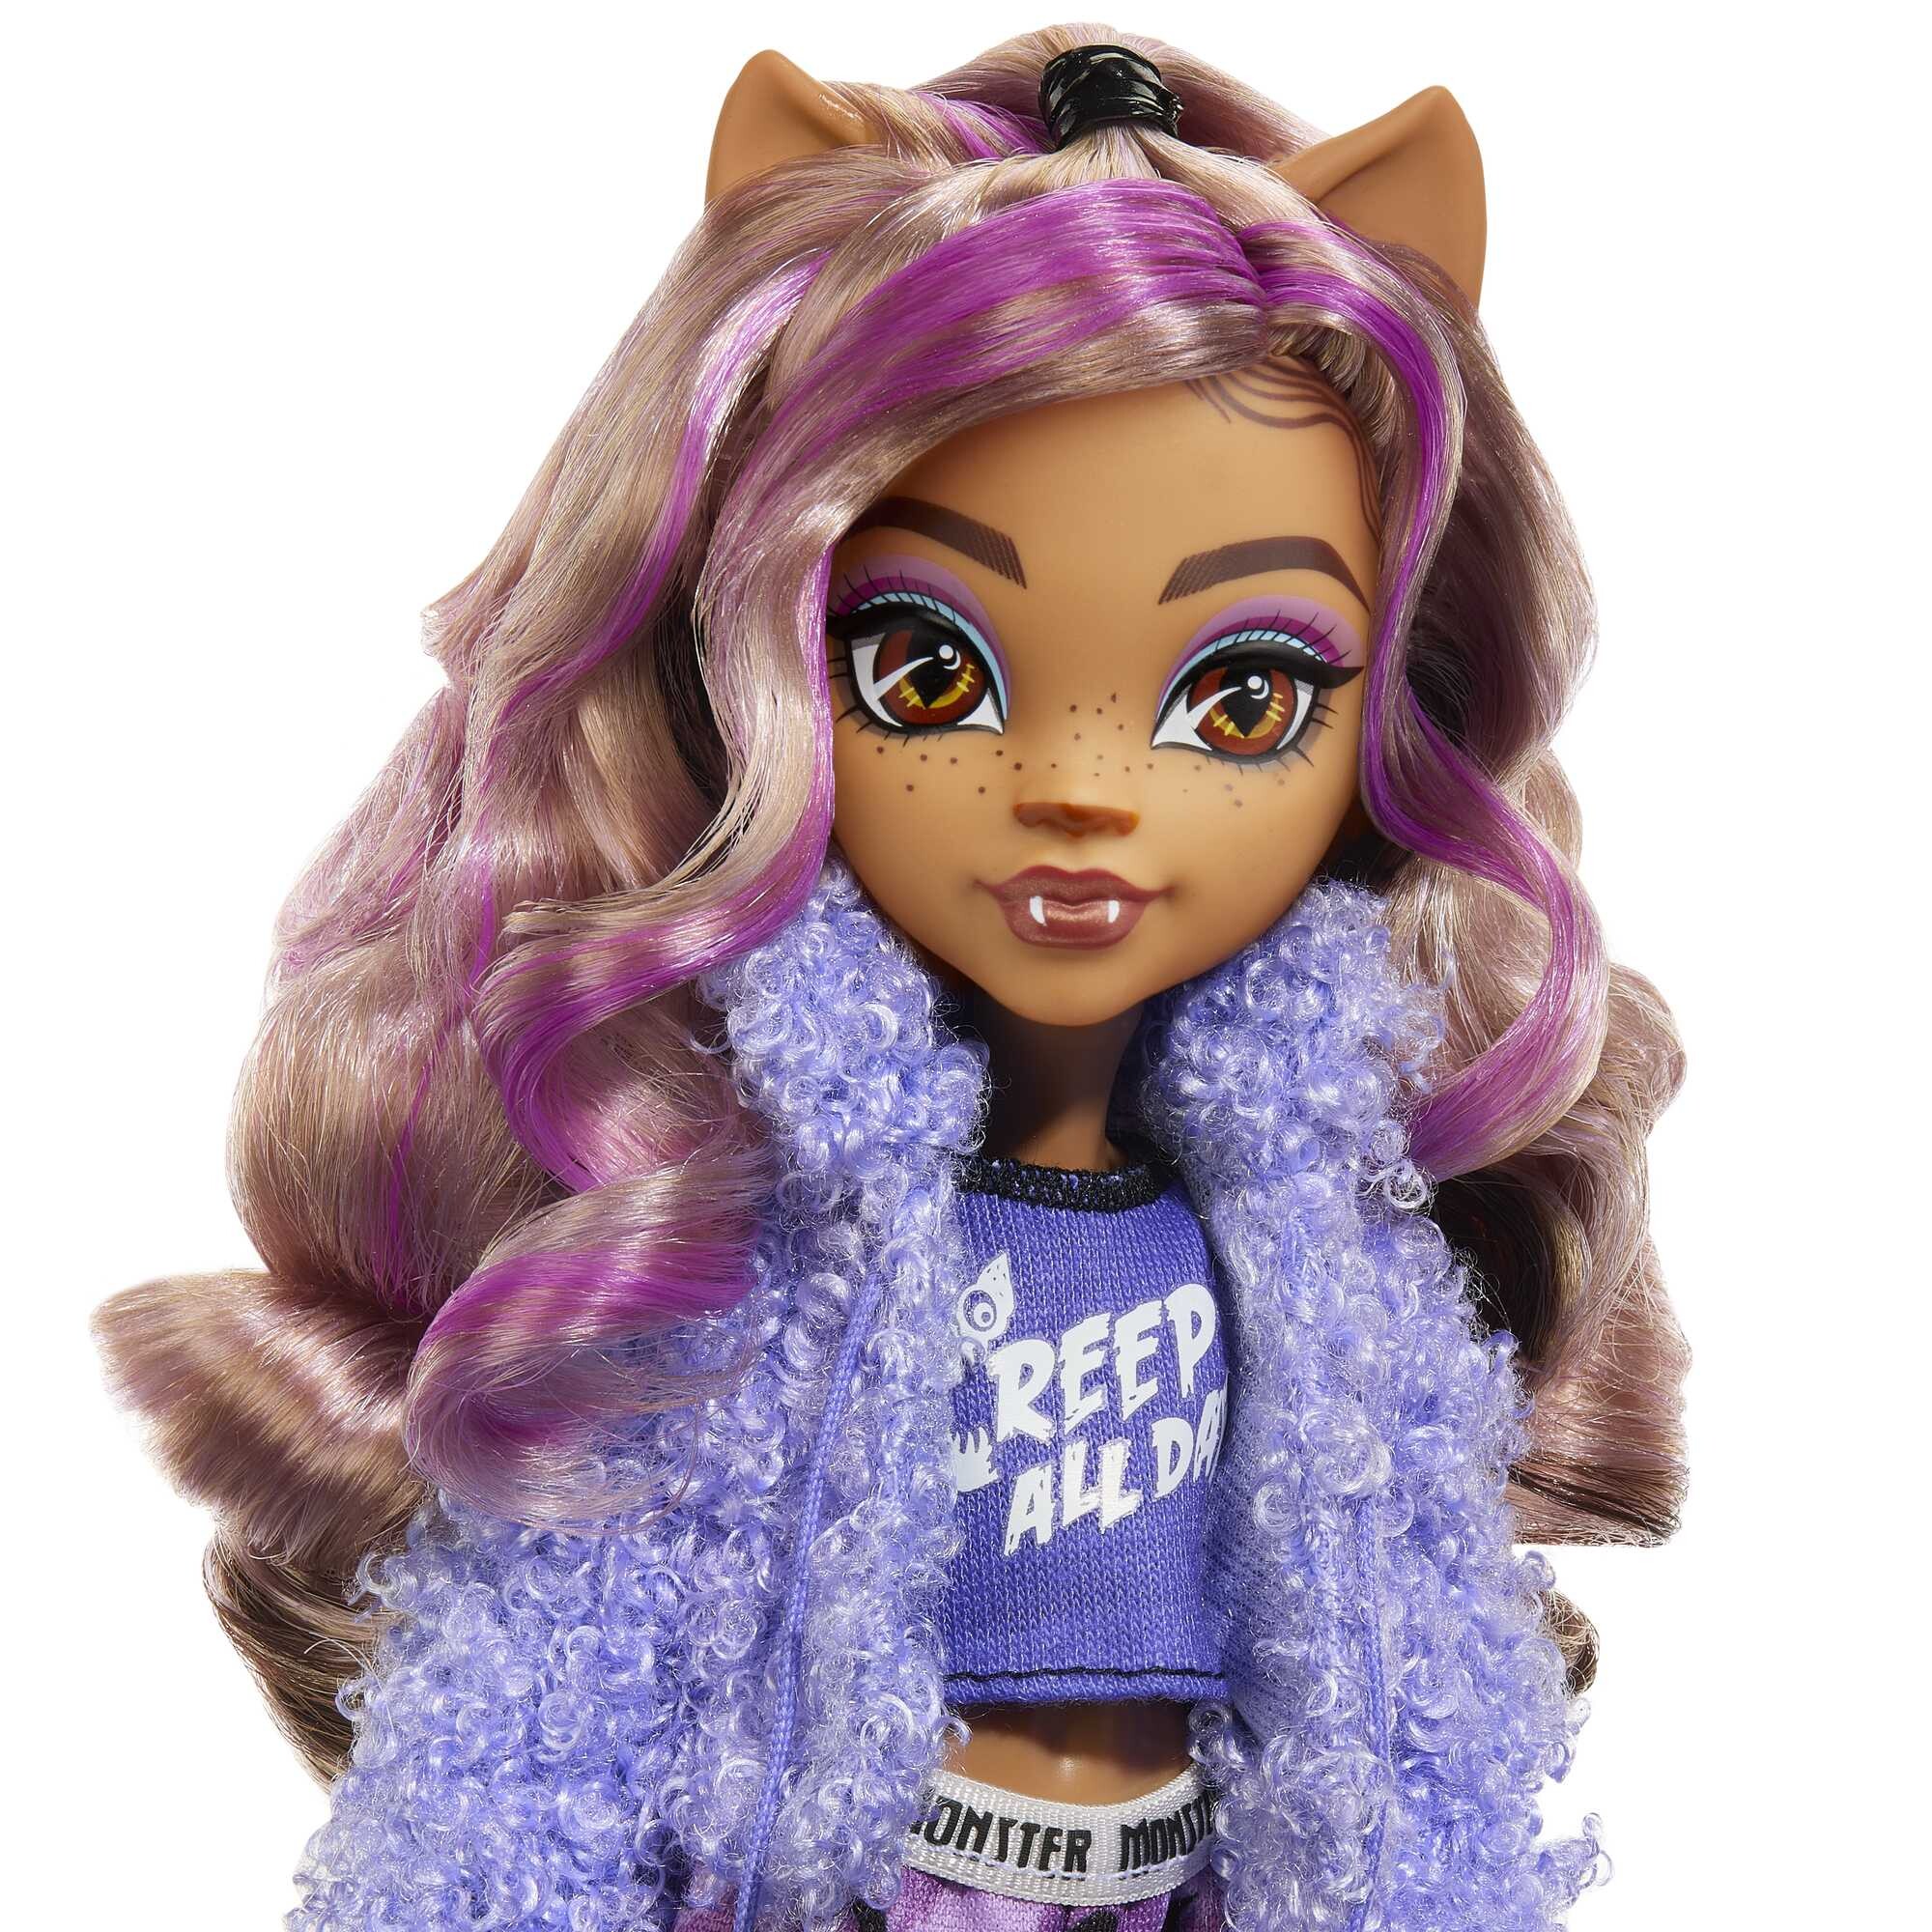 Monster high - clawdeen wolf creepover party, bambola con outfit dettagliato e accessori per il pigiama party, cucciolo crescent incluso - Monster High